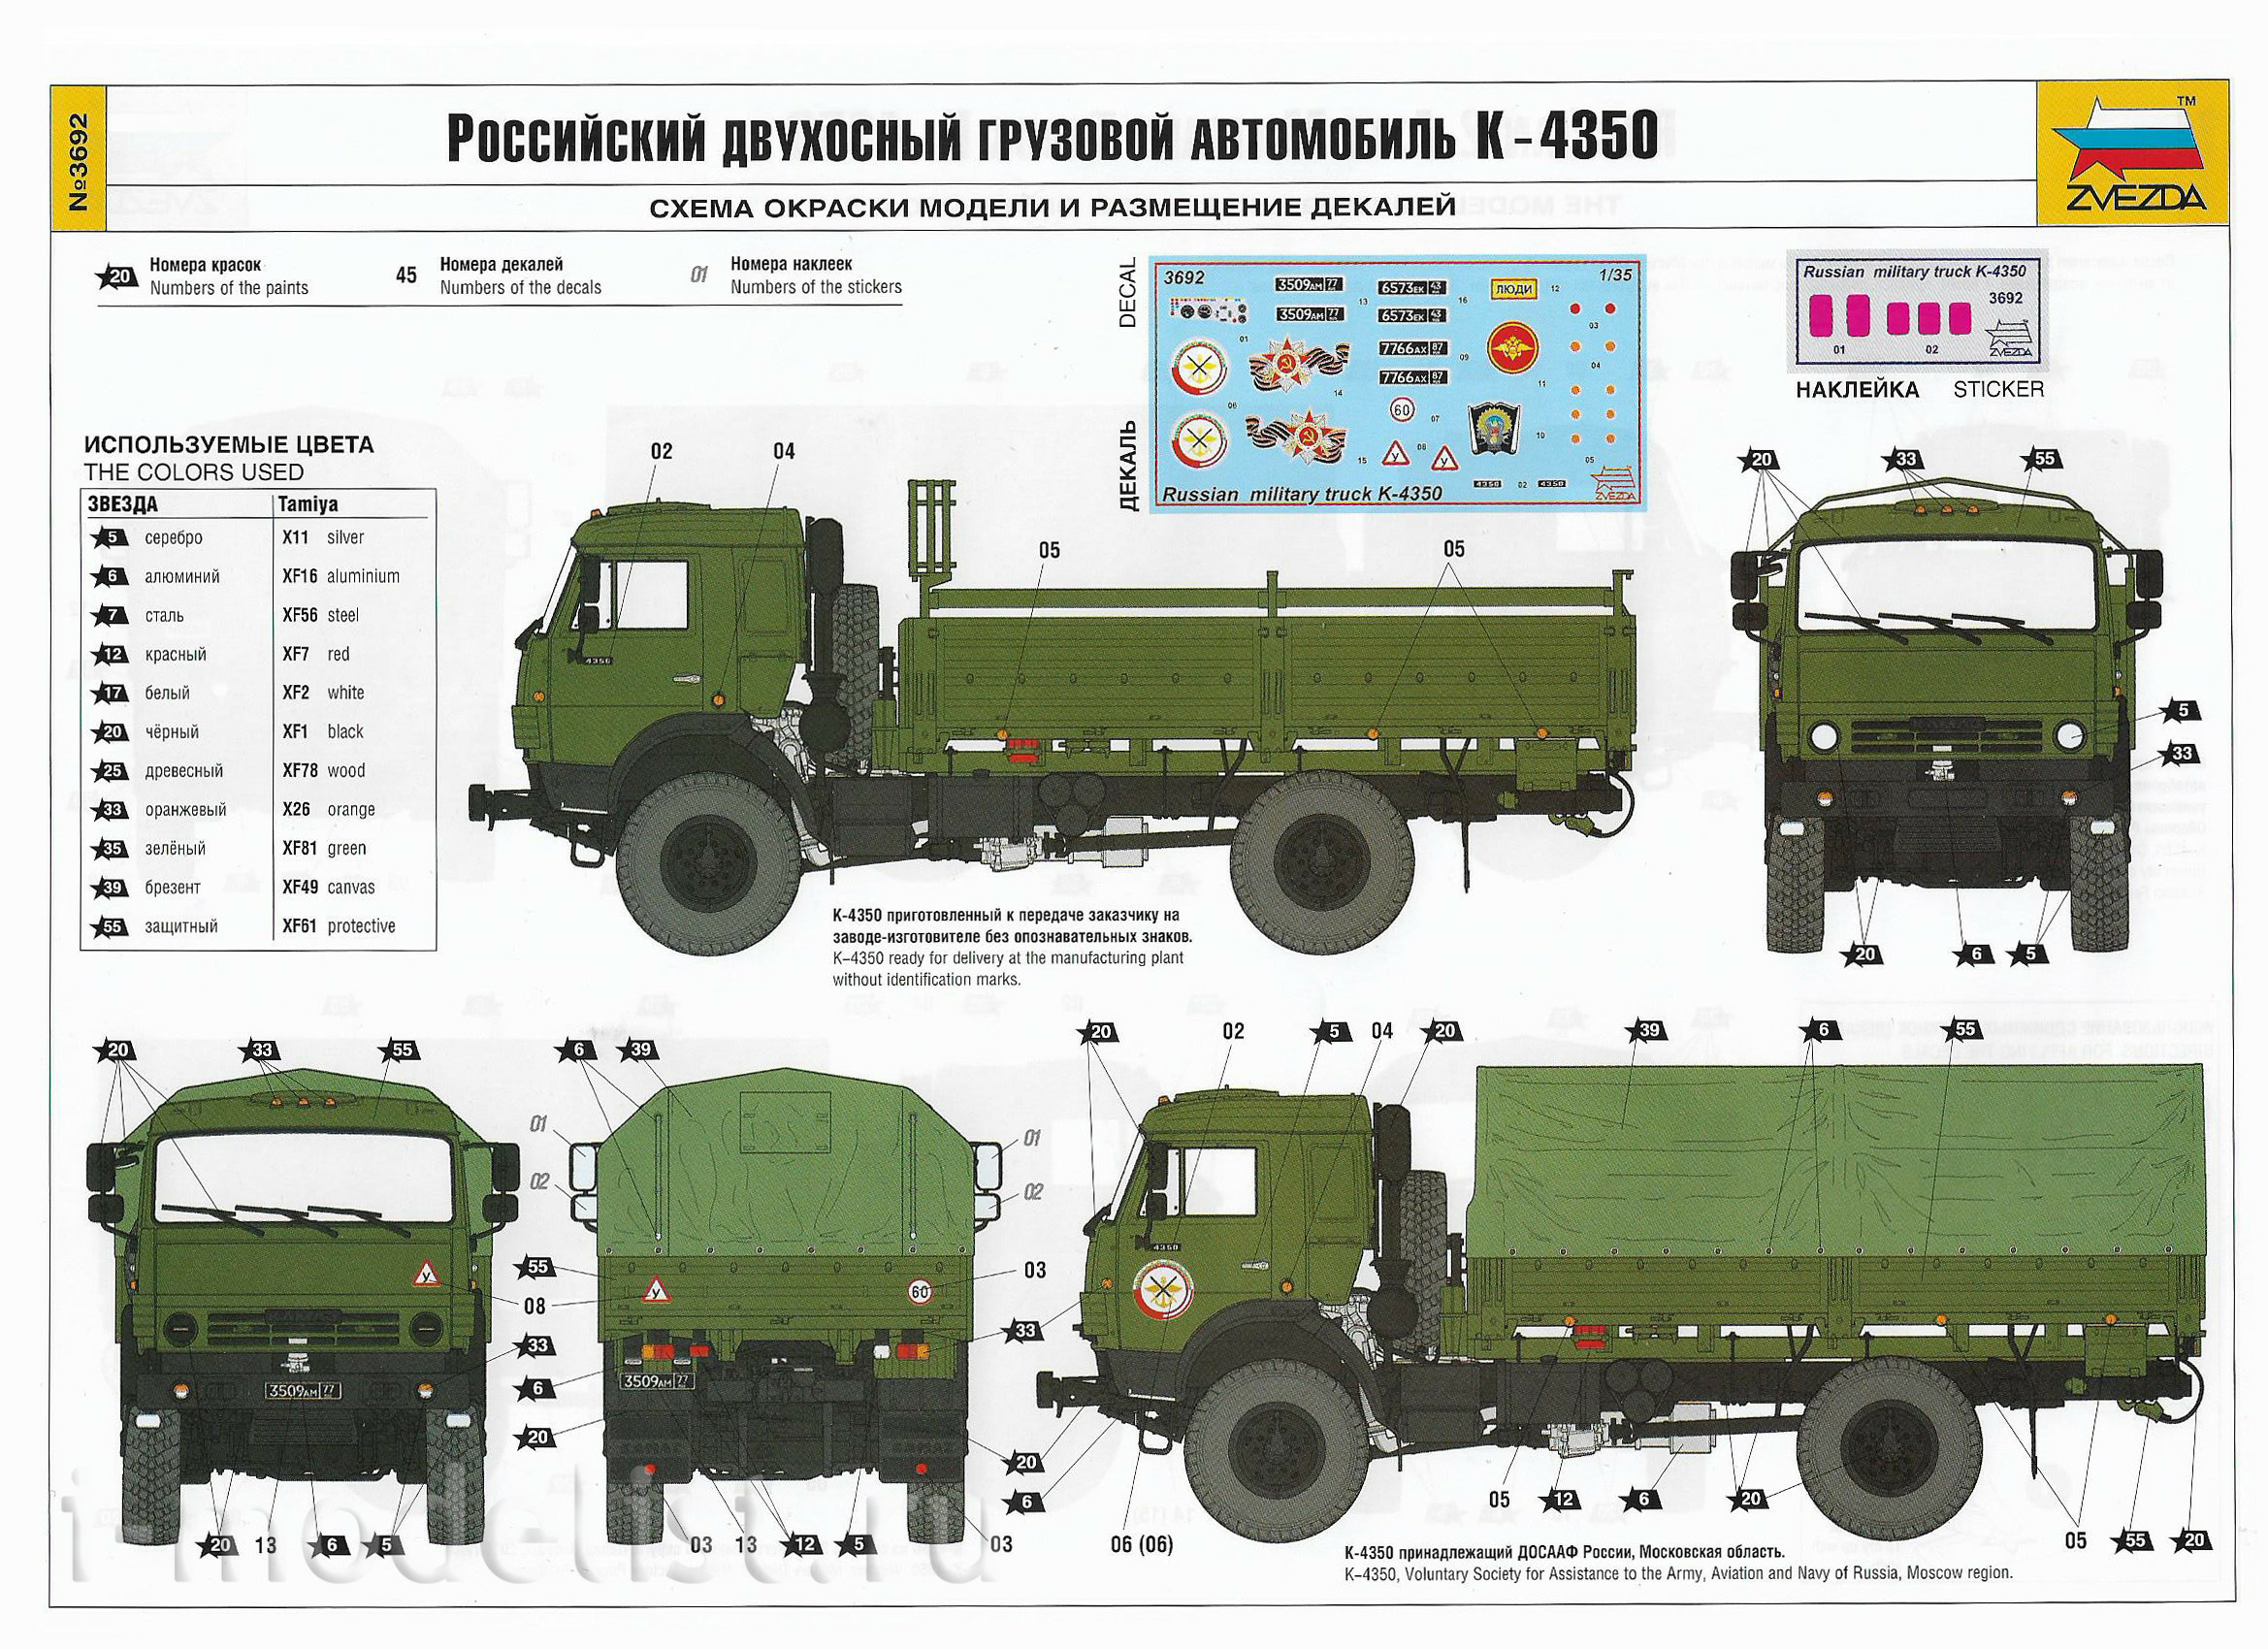 3692 Zvezda 1/35 Russian two-axle truck K-4350